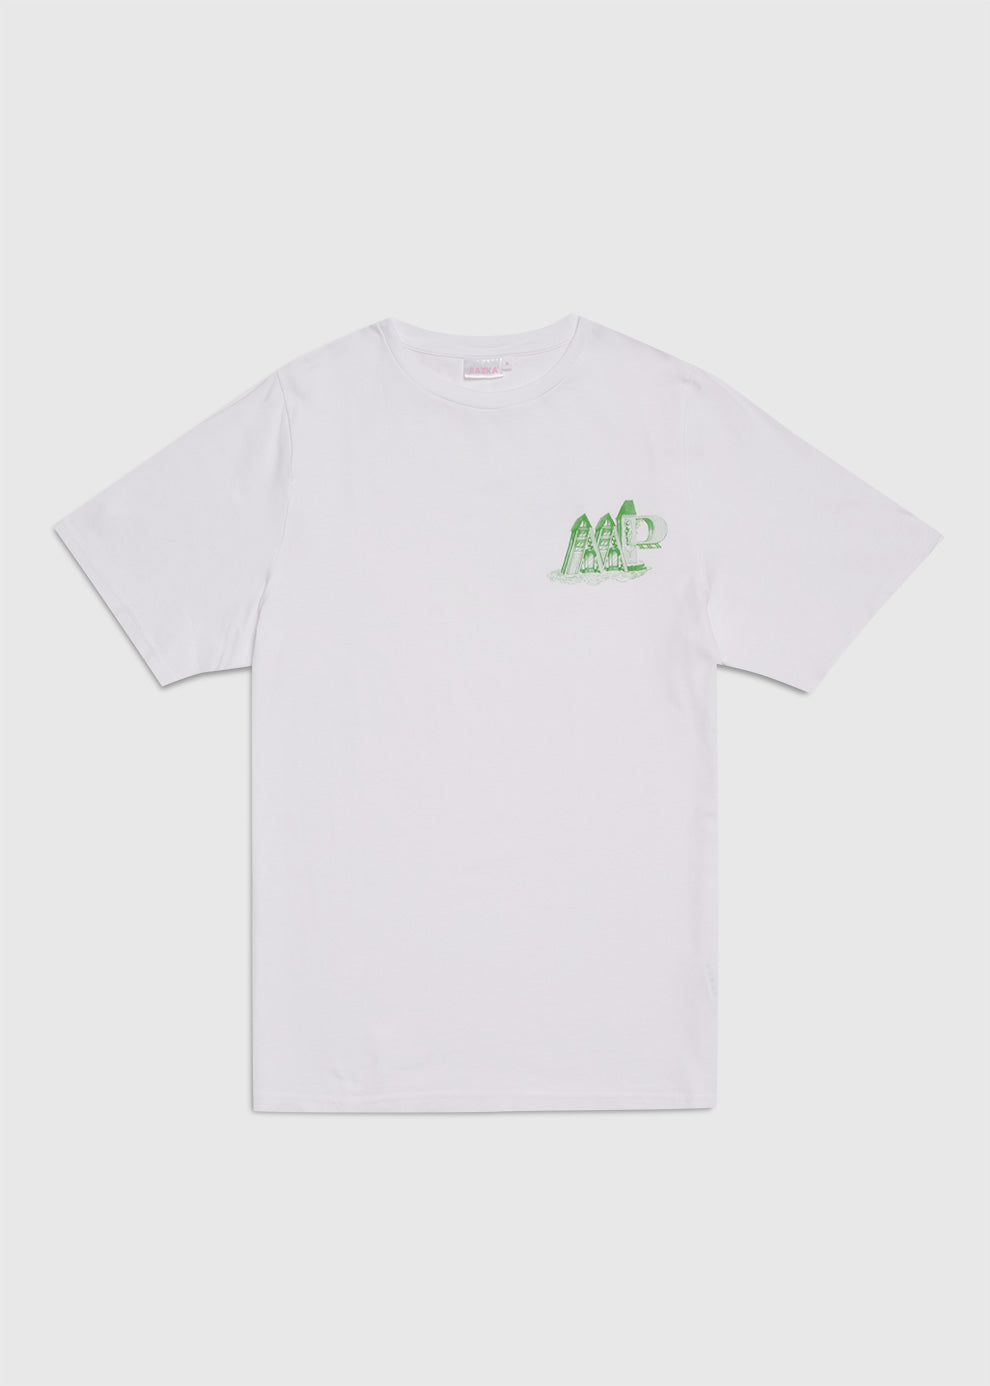 T-shirt Maison plaisir Vert